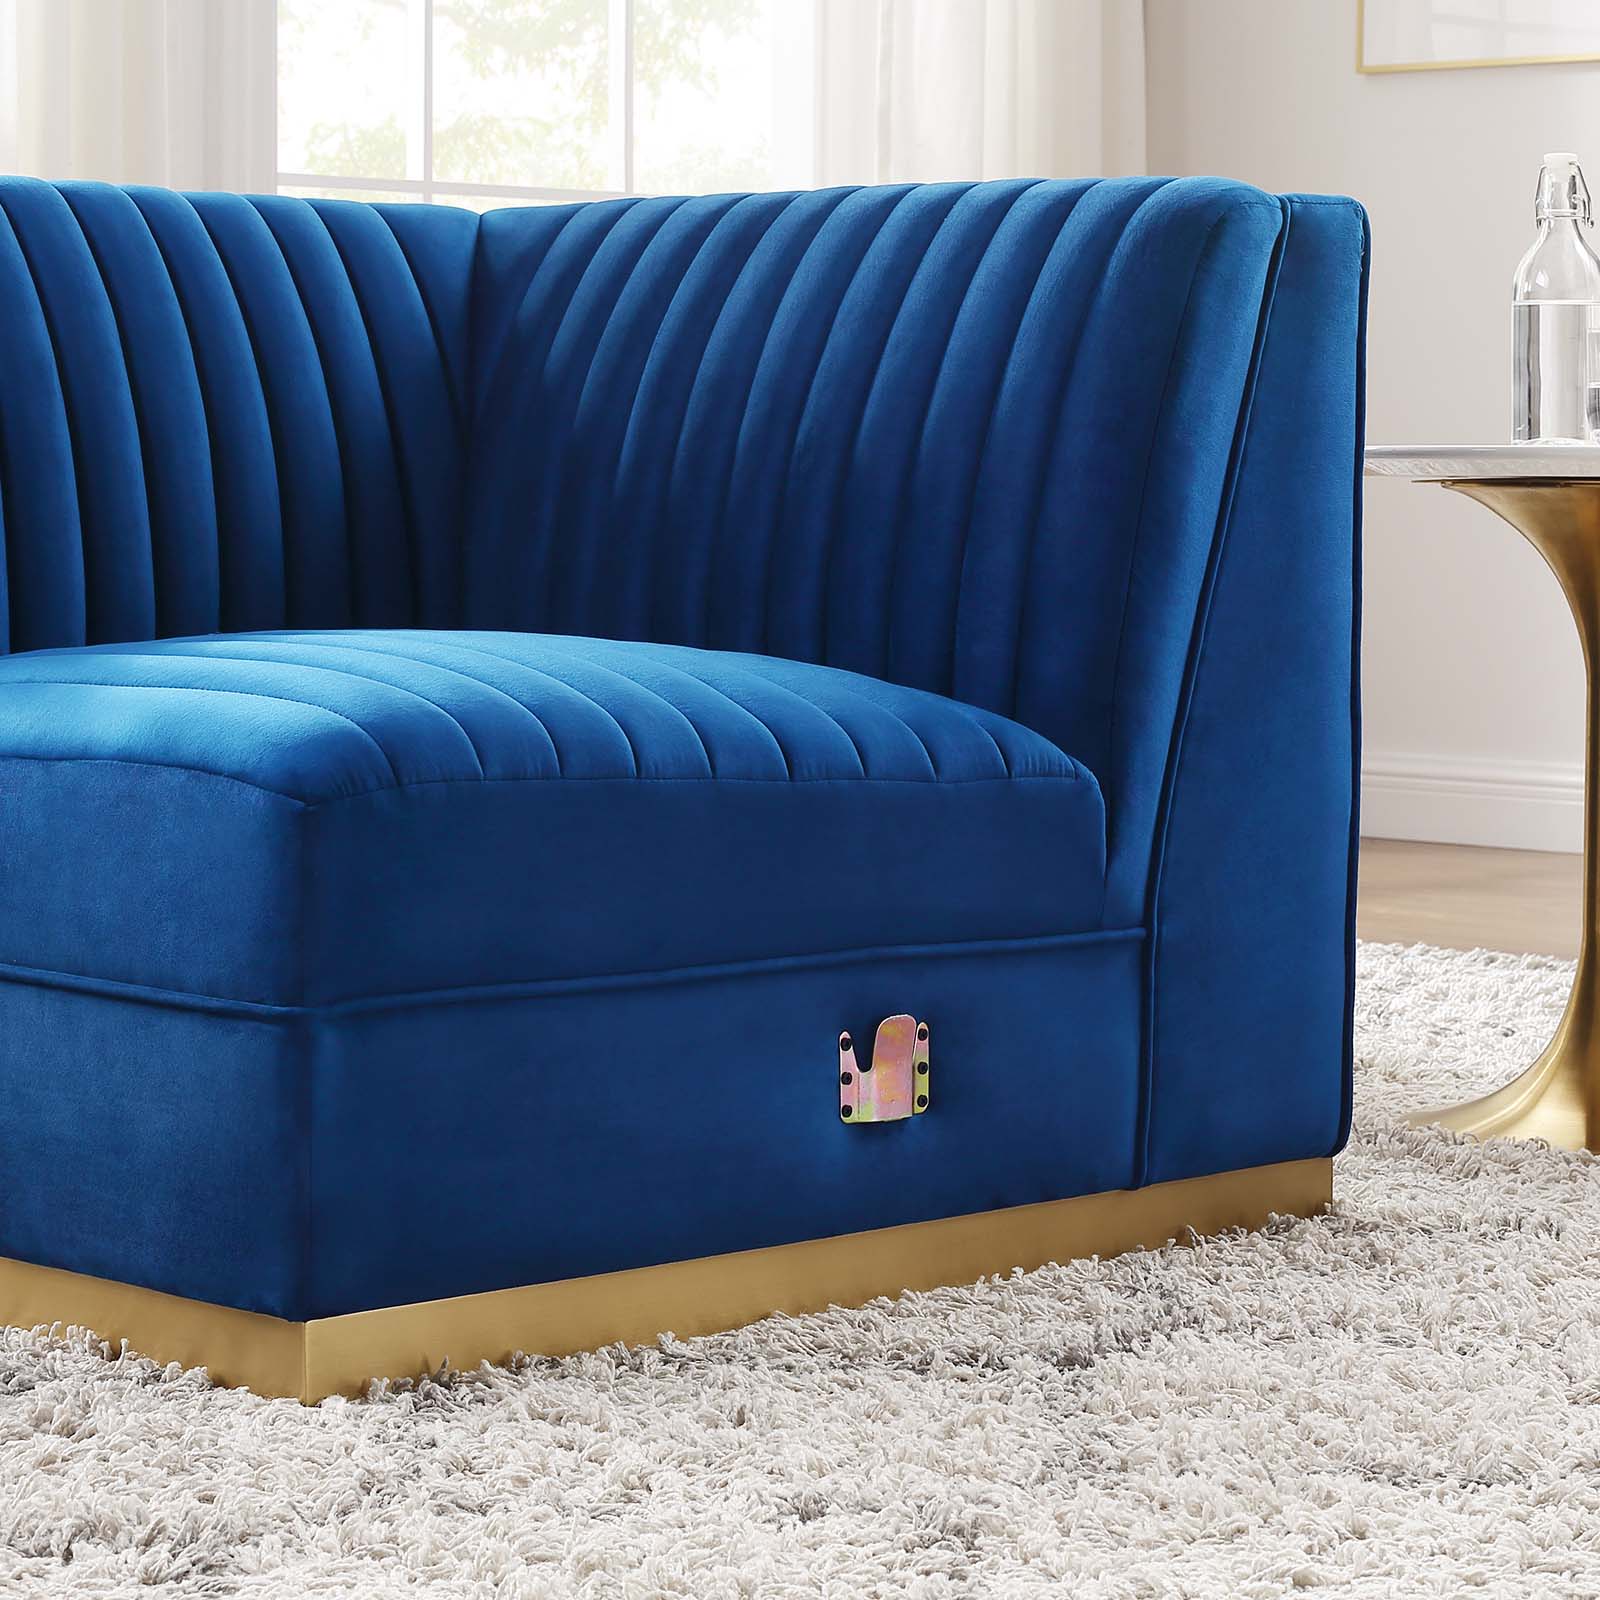 Sanguine Channel Tufted Performance Velvet Modular Sectional Sofa Right Corner Chair - East Shore Modern Home Furnishings